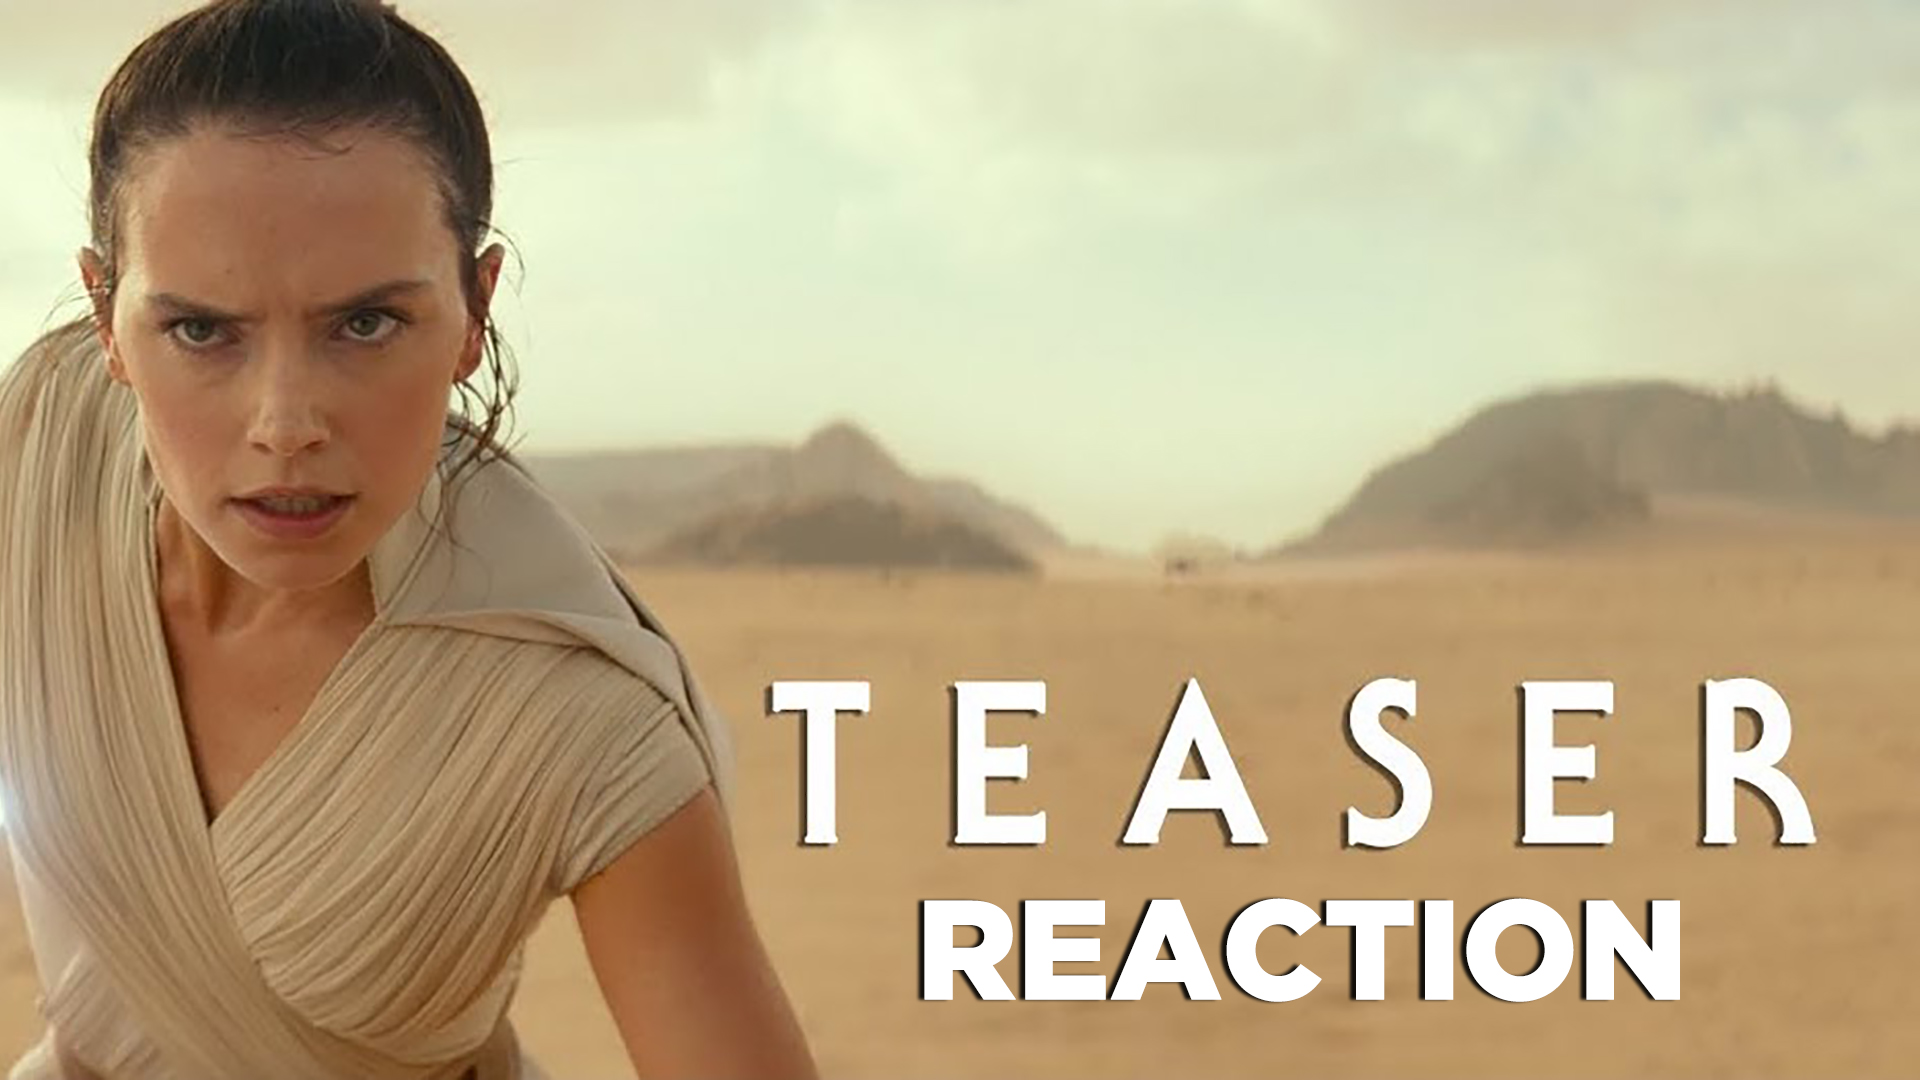 Il teaser di Star Wars Episodio IX: reazione live con Itomi e Roby direttamente dalla Star Wars Celebration!